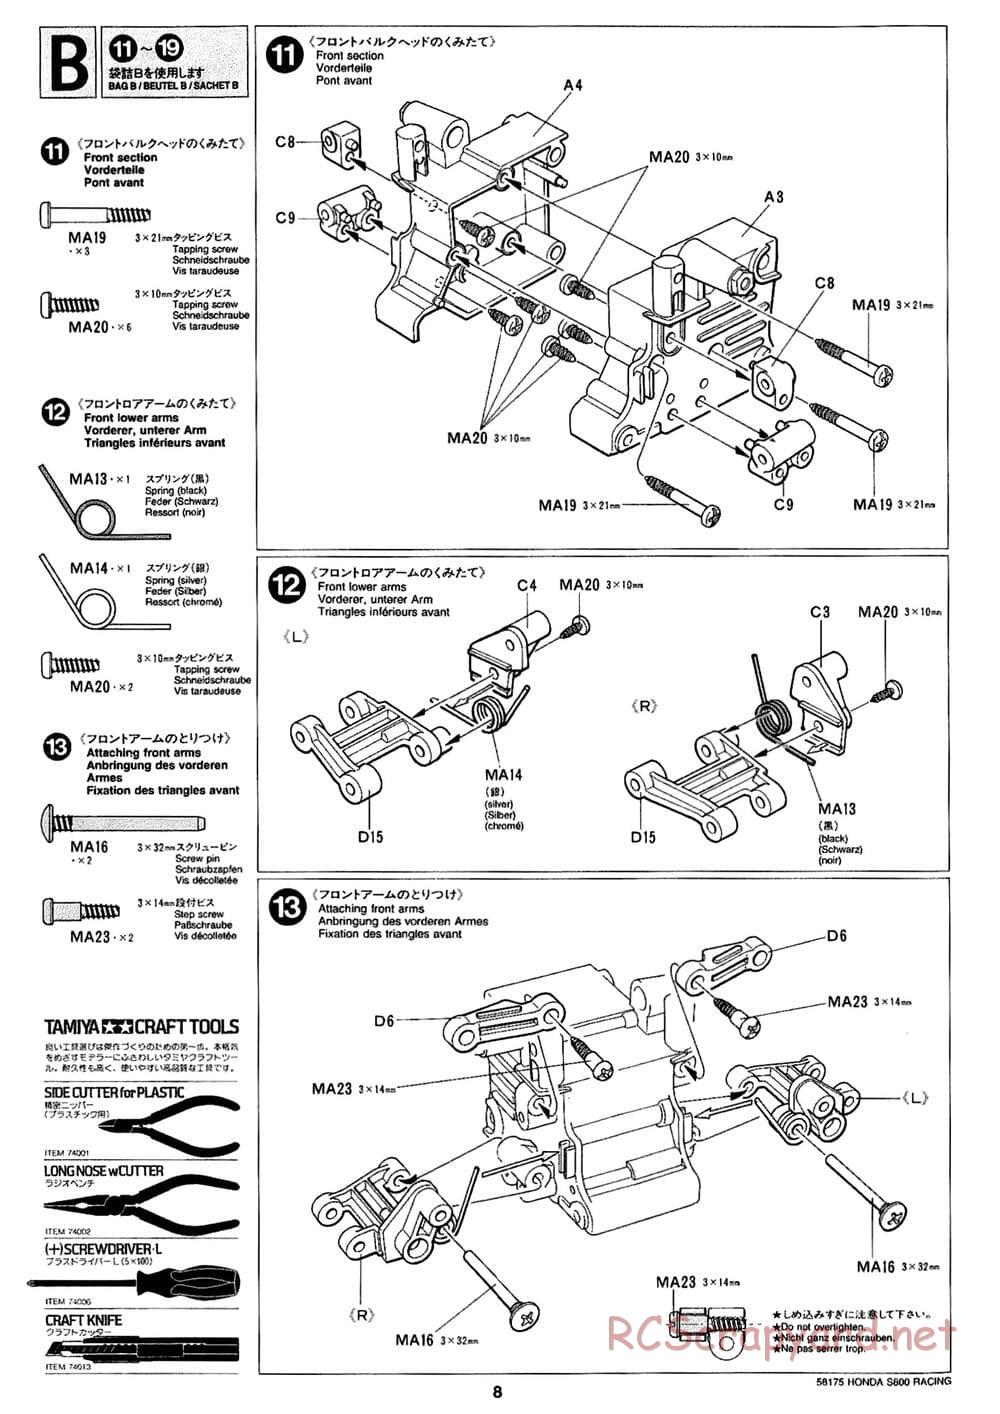 Tamiya - Honda S800 Racing - M02 Chassis - Manual - Page 8